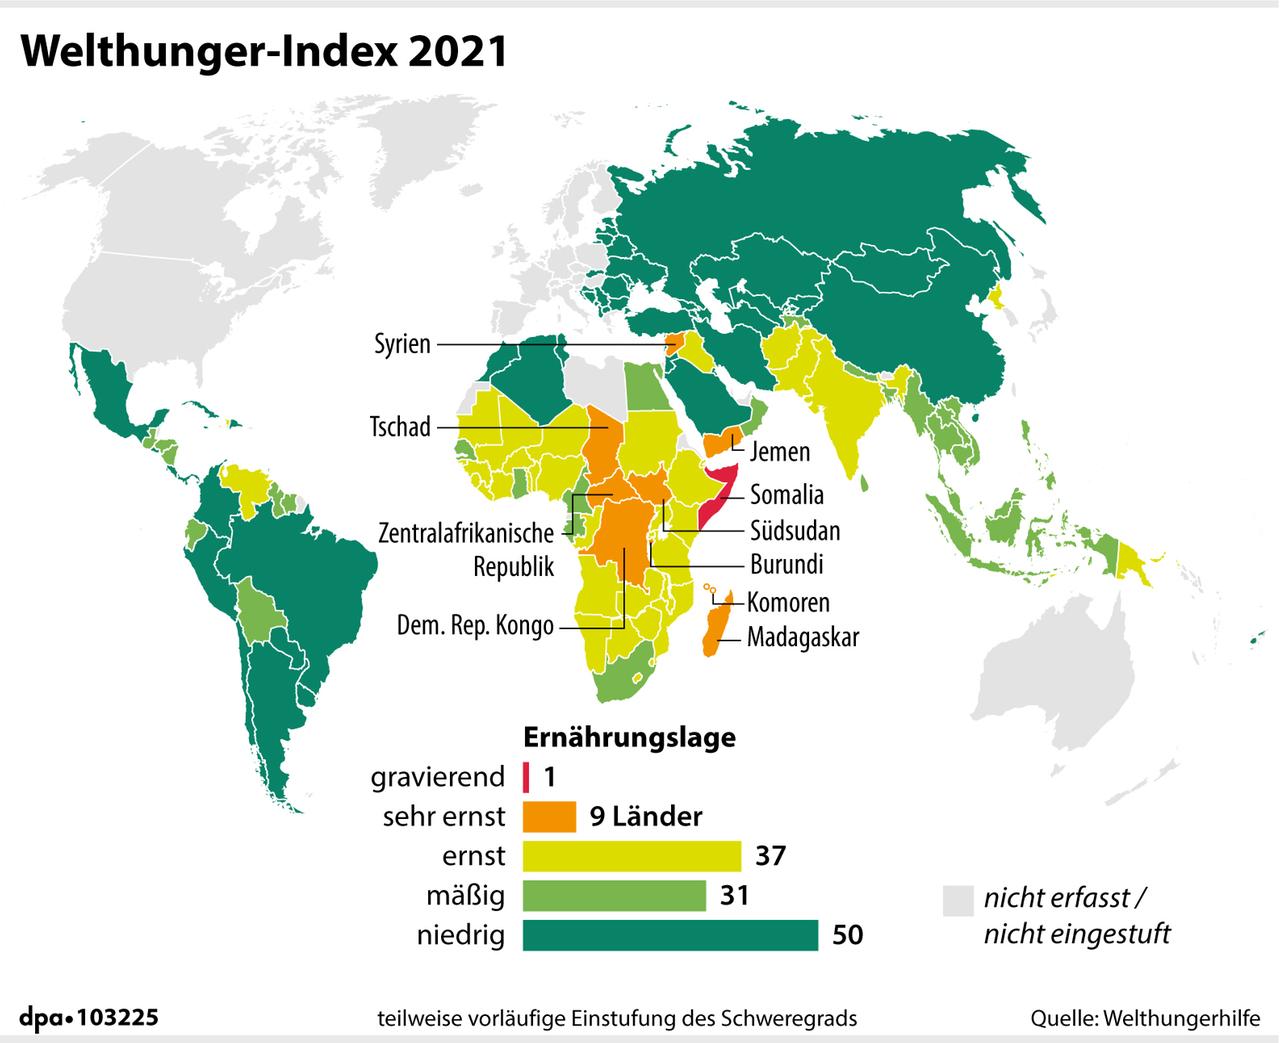 Der Welthunger-Index berechnet und bewertet die globale Hungersituation - hier dargestellt auf einer Weltkarte